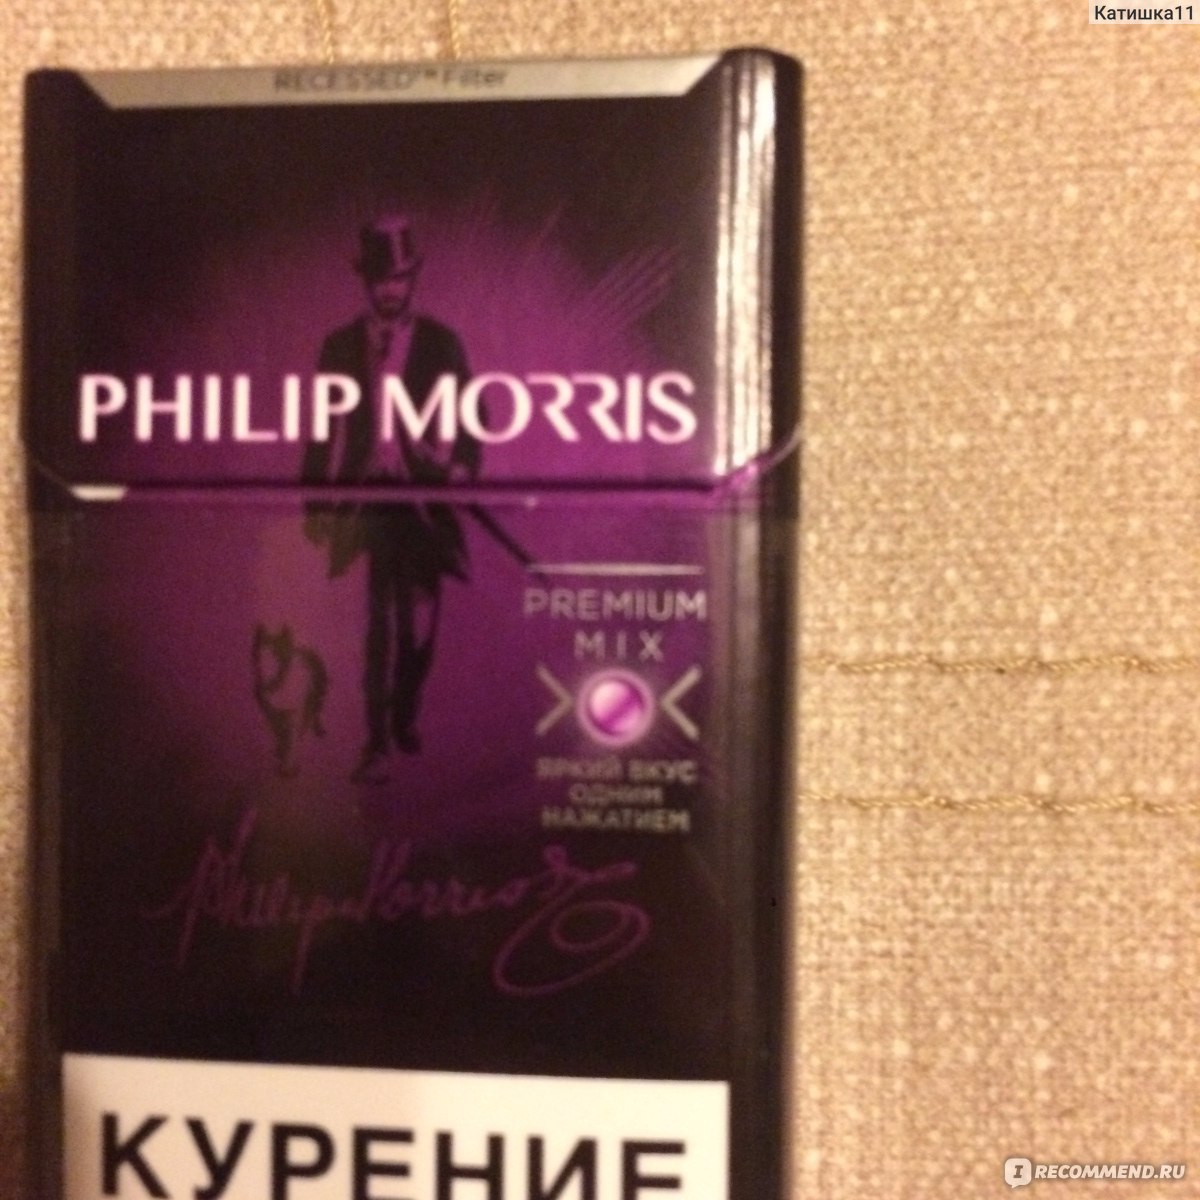 Филип морис кнопка цена. Сигареты Филип Моррис с кнопкой. Сигареты Филип Моррис с кнопкой фиолетовой.